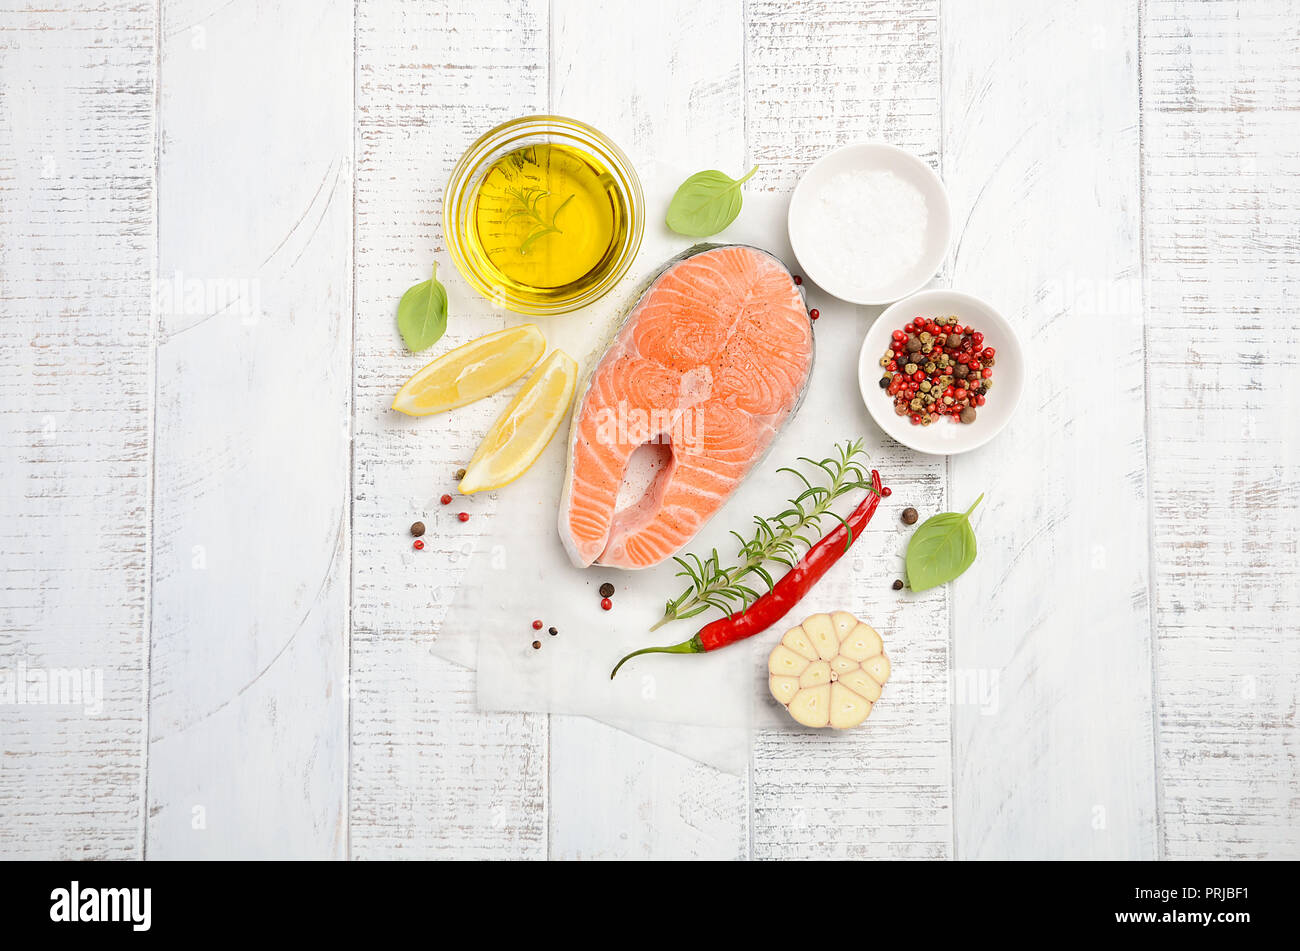 Filete de salmón fresca cruda con limón, aceite de oliva y especias sobre fondo de madera de estilo rústico. Ingredientes para hacer la cena saludable. Concepto de dieta saludable. Foto de stock